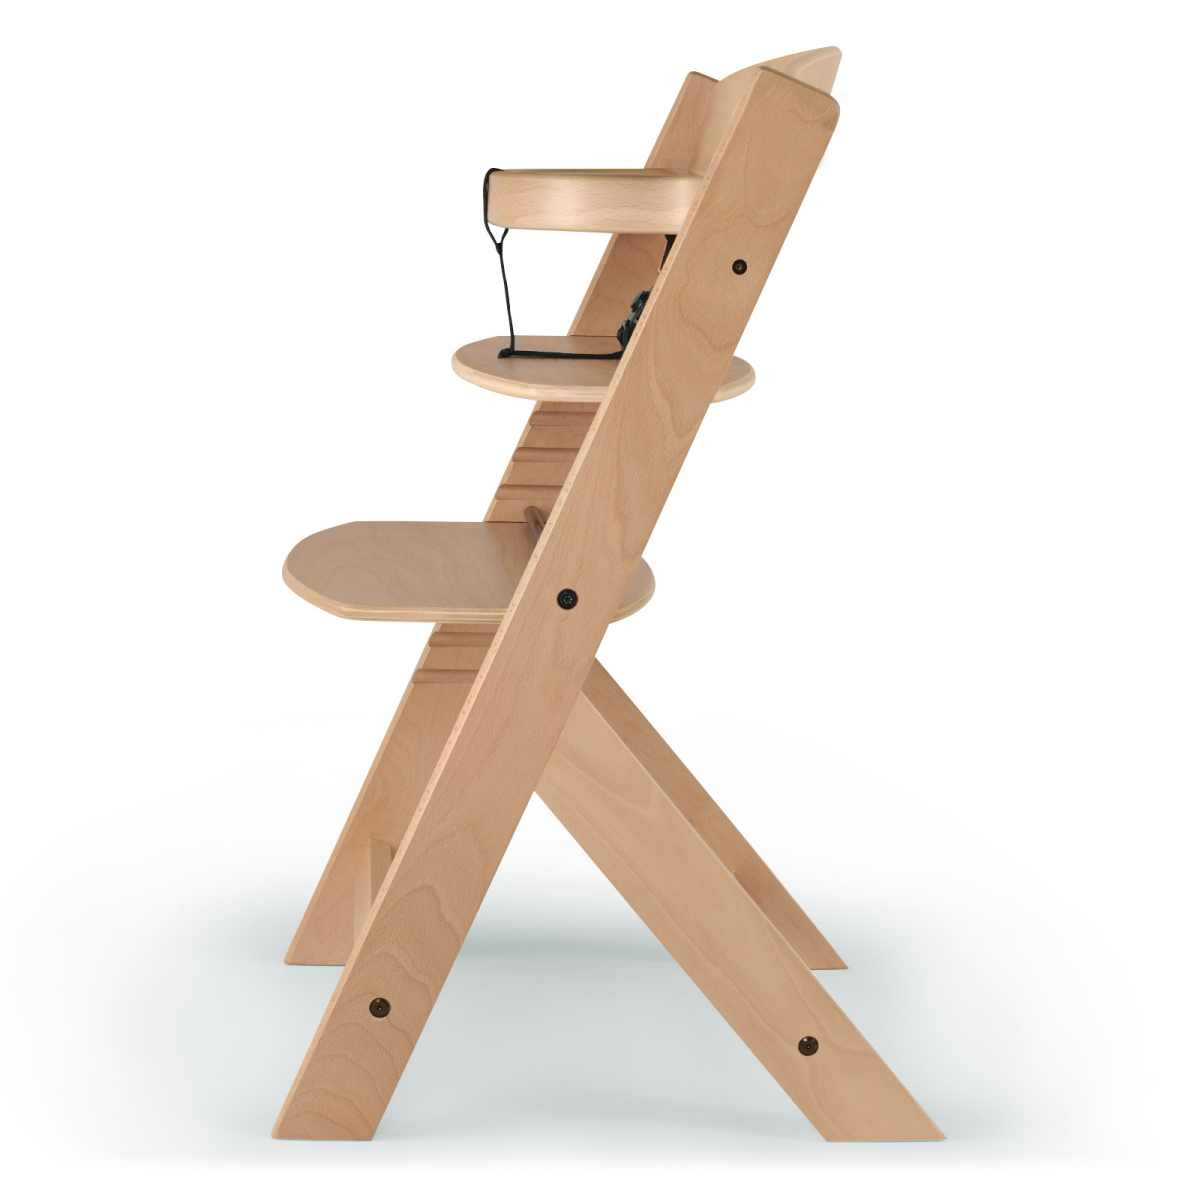 Chaise haute évolutive pliante avec pieds en bois 2en1 enfant noir